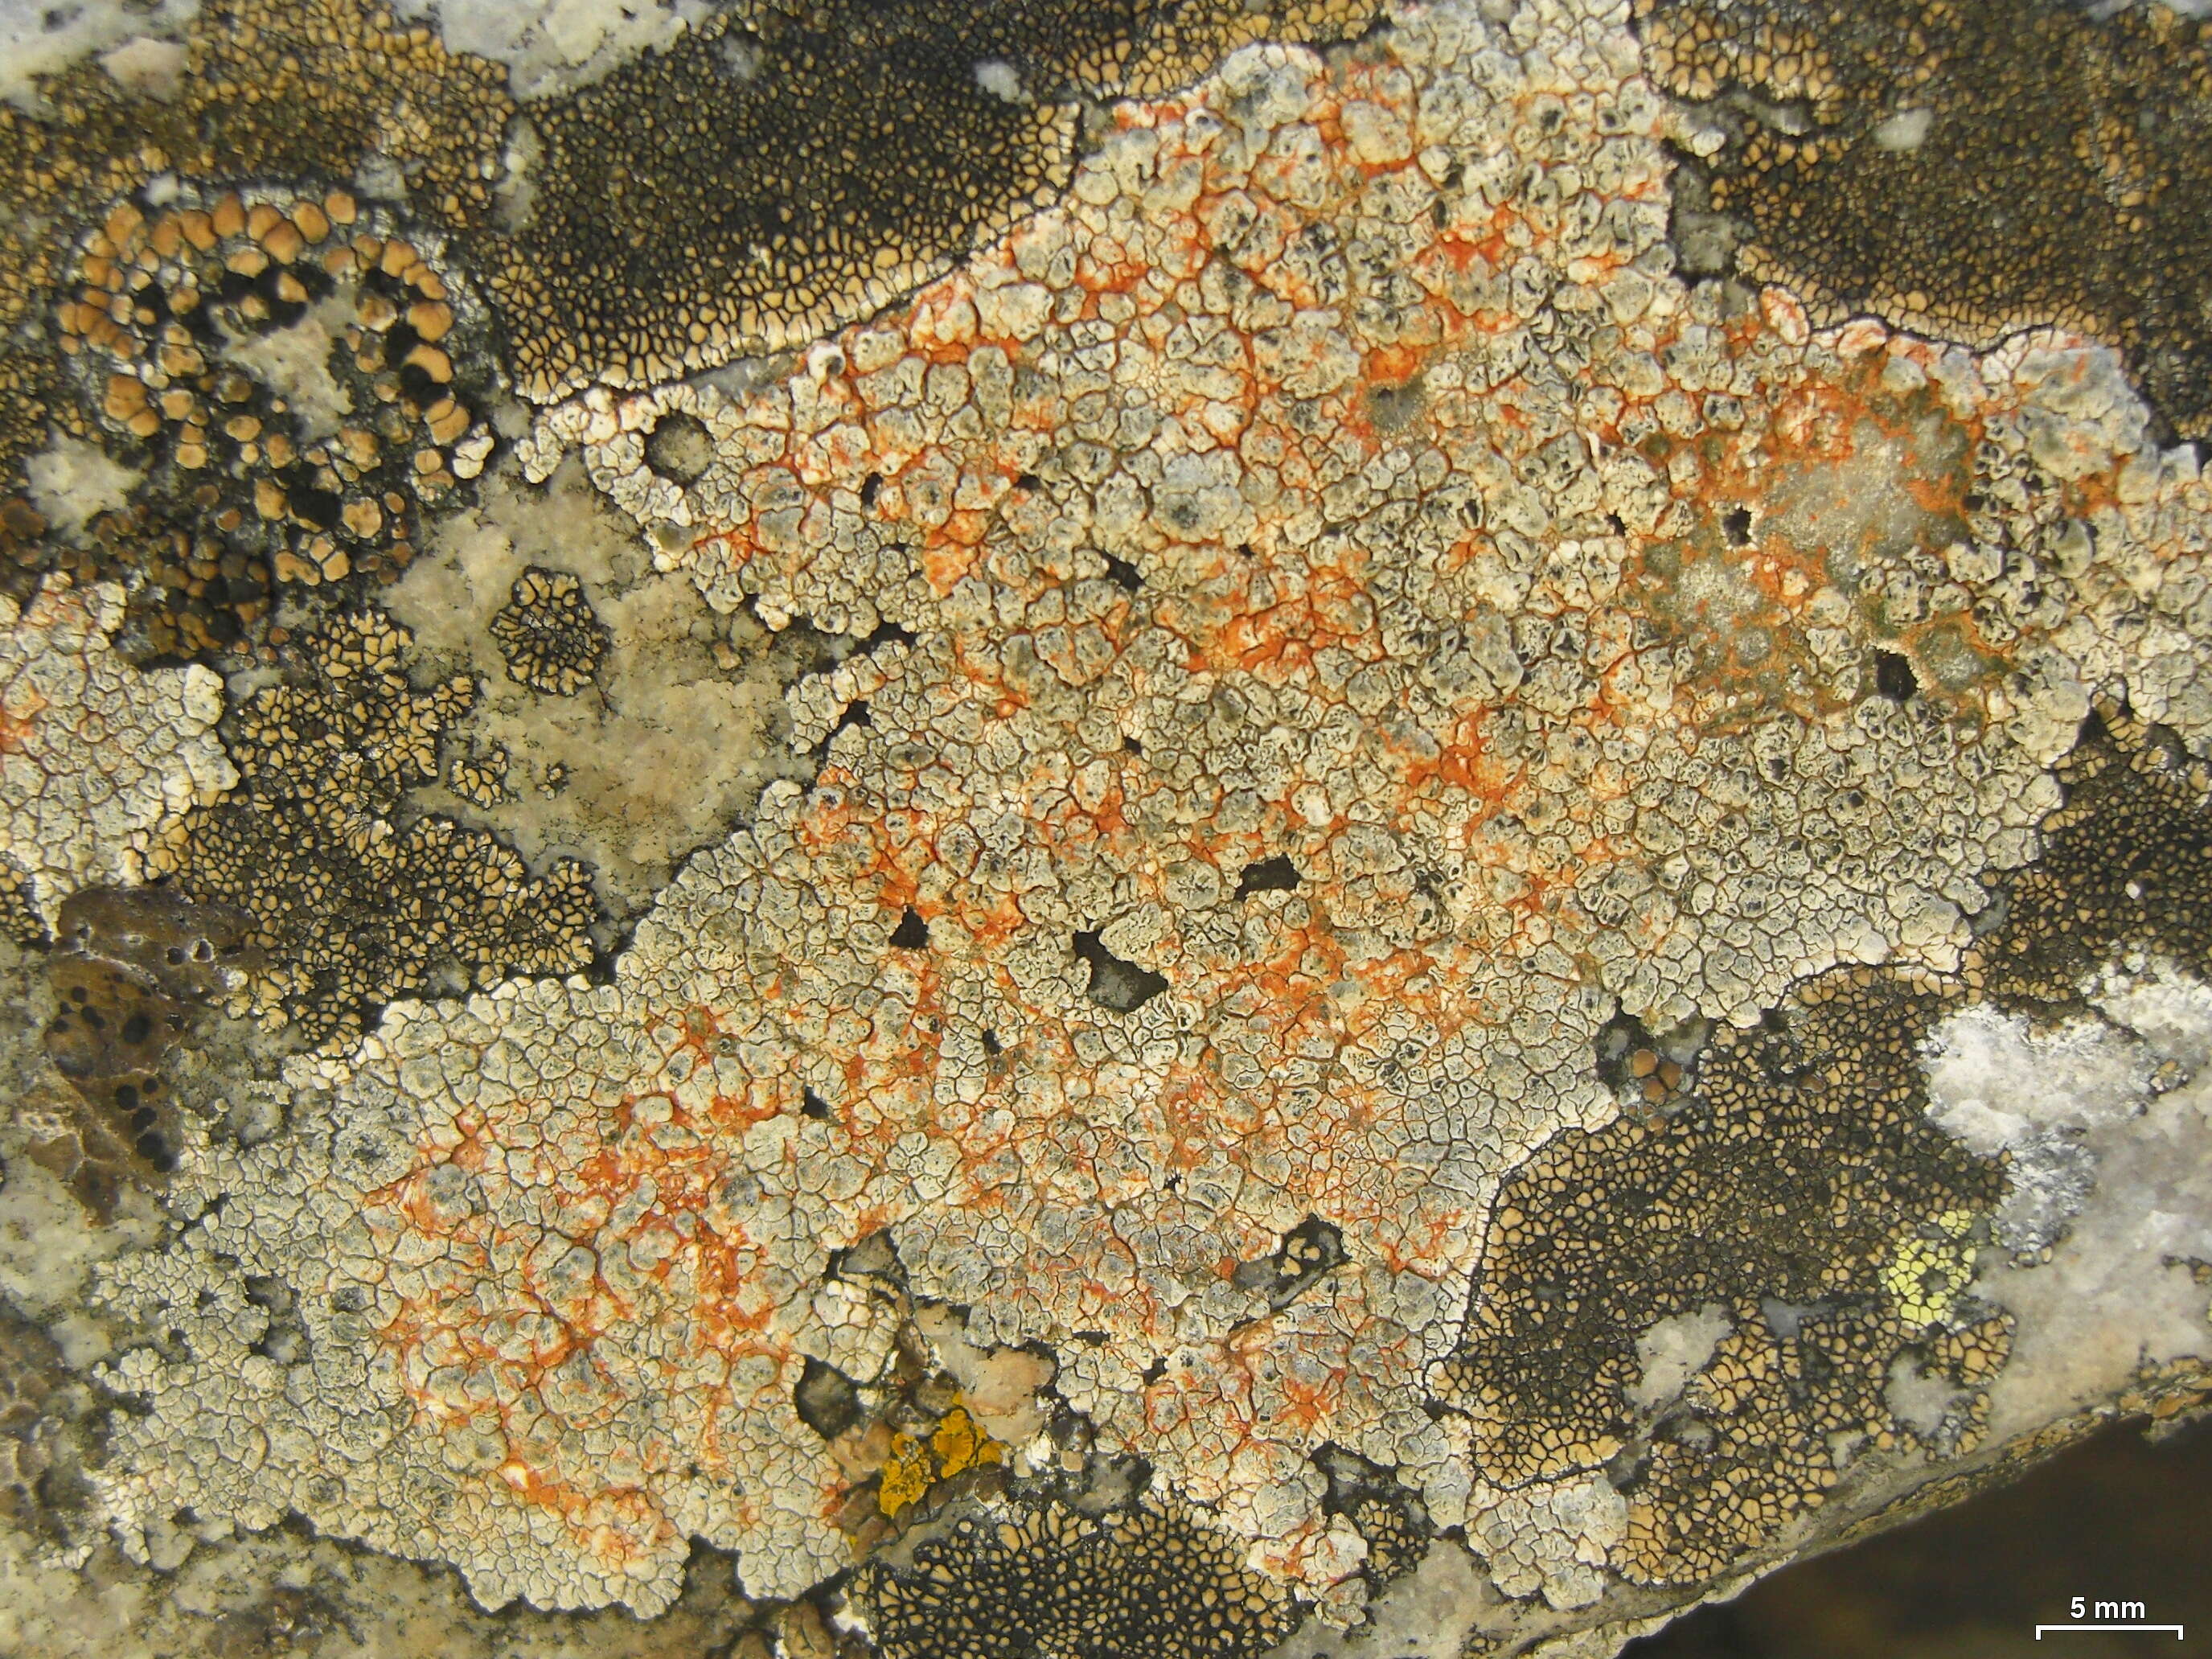 Image of Cinder lichen;   Rimmed lichen